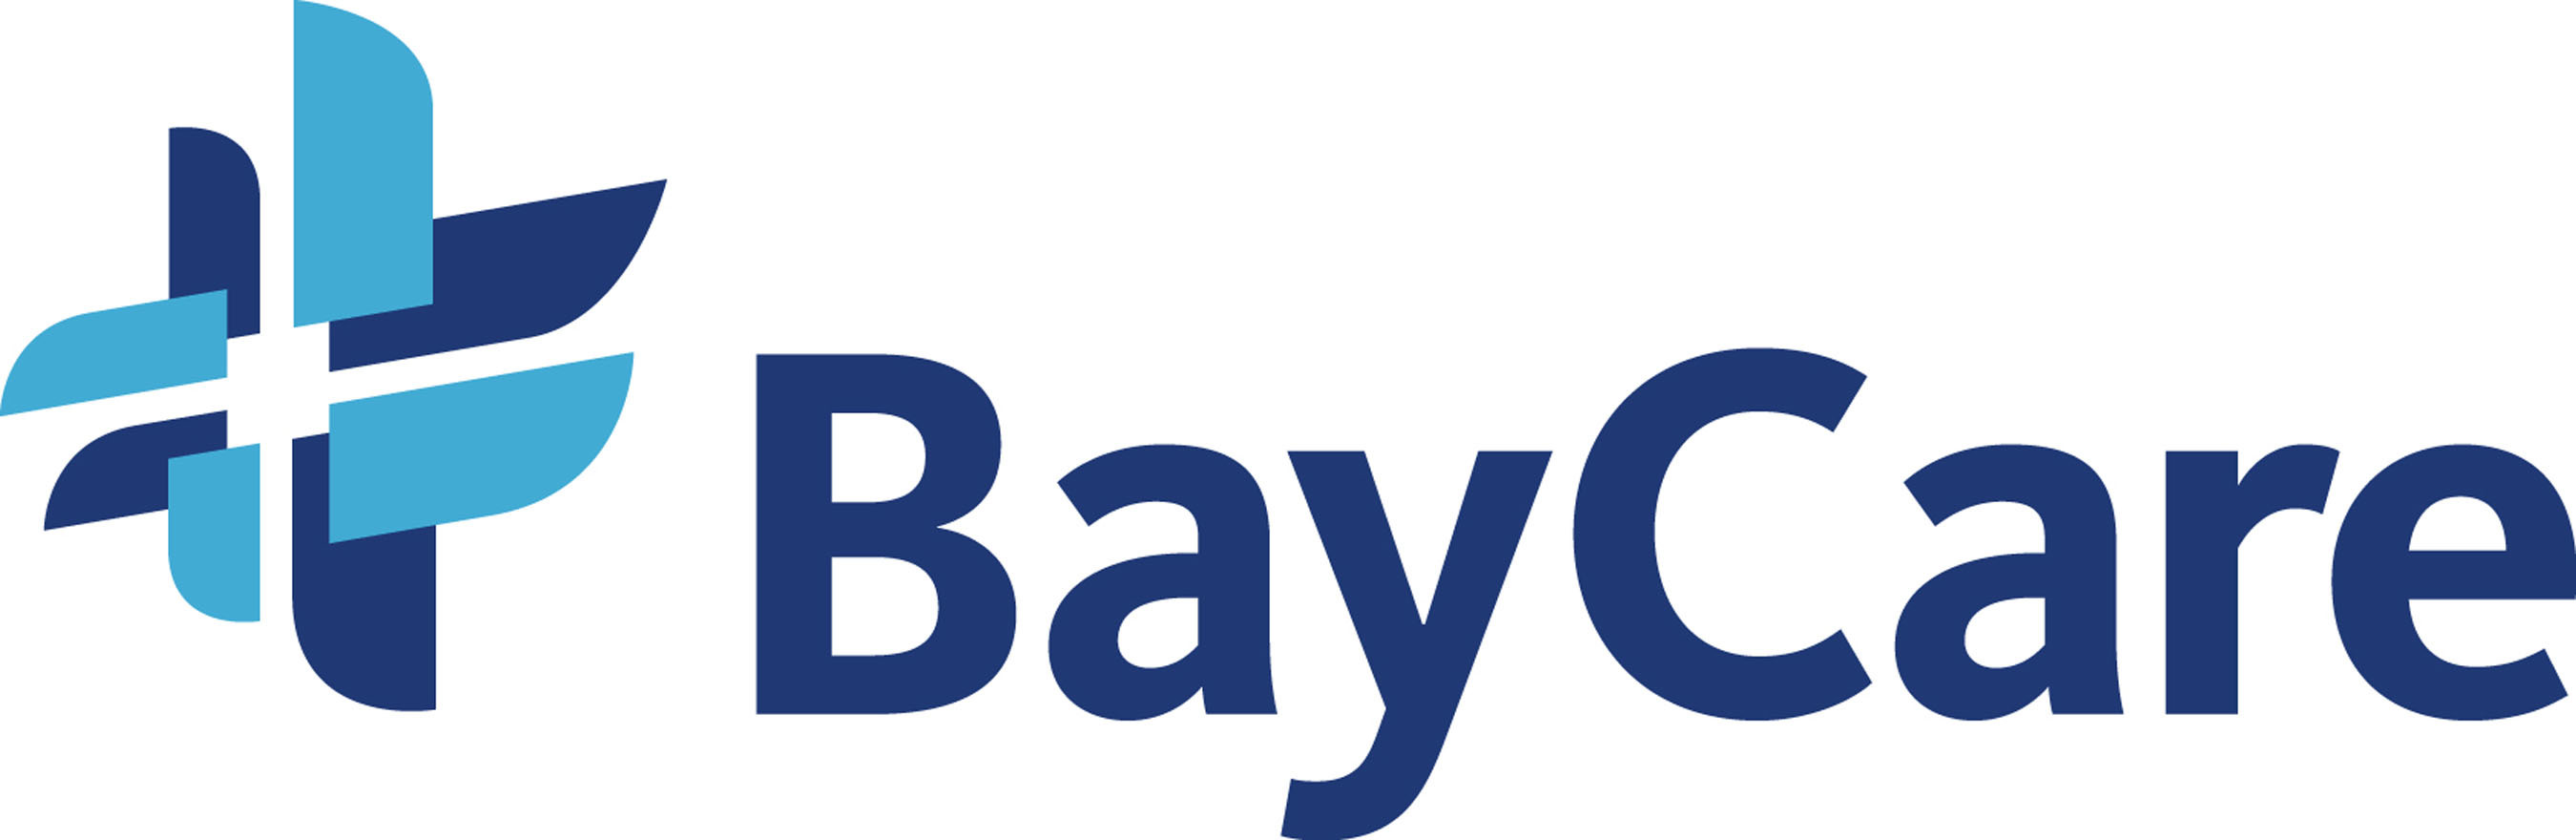 BayCare Logo. (PRNewsFoto/BayCare Health System)